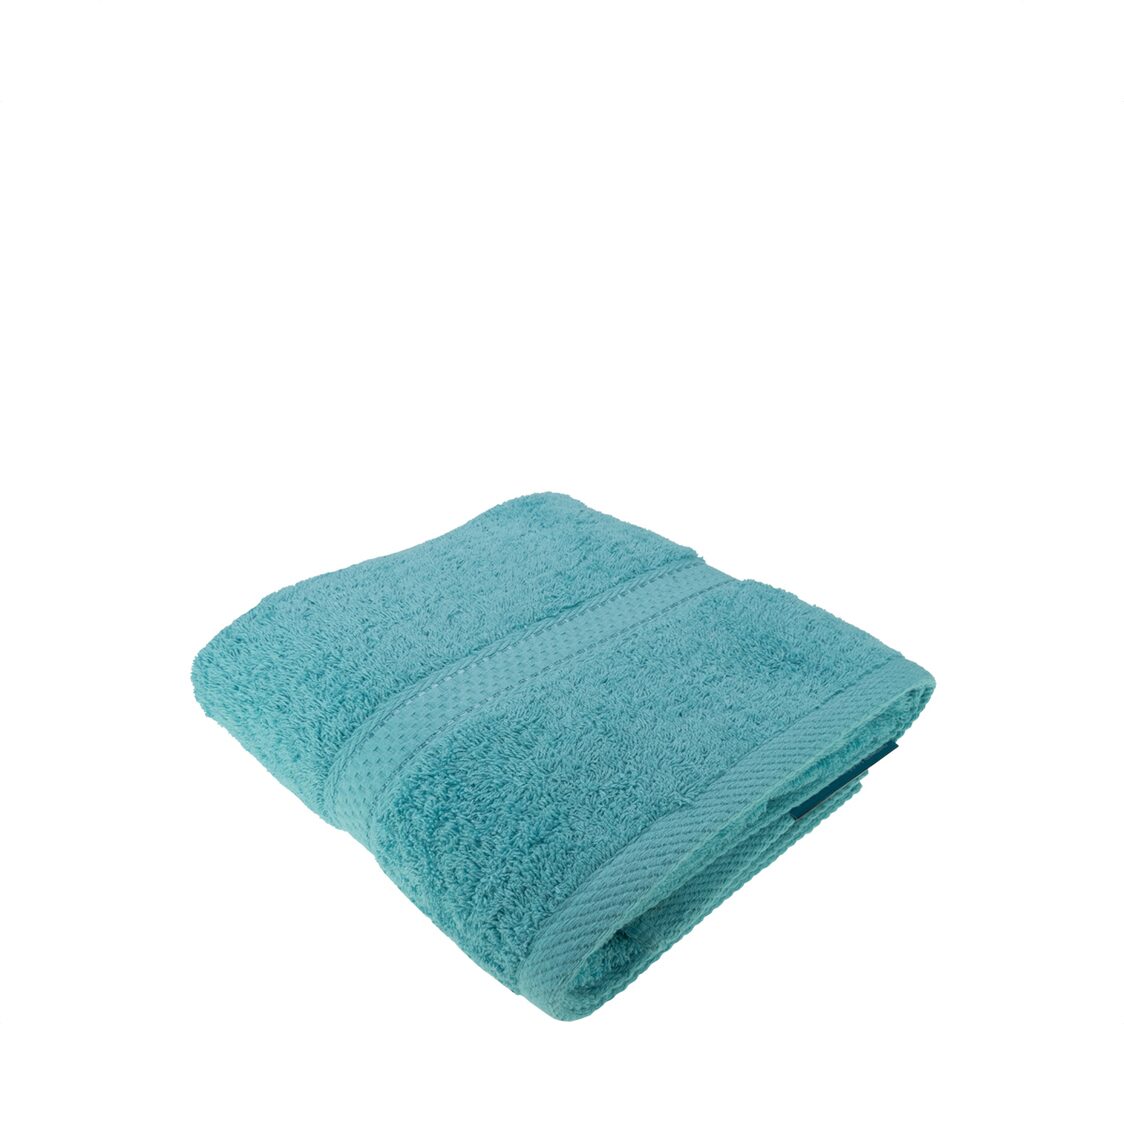 Charles Millen Suite Collection CT108 Classique Bath Towel Turquoise